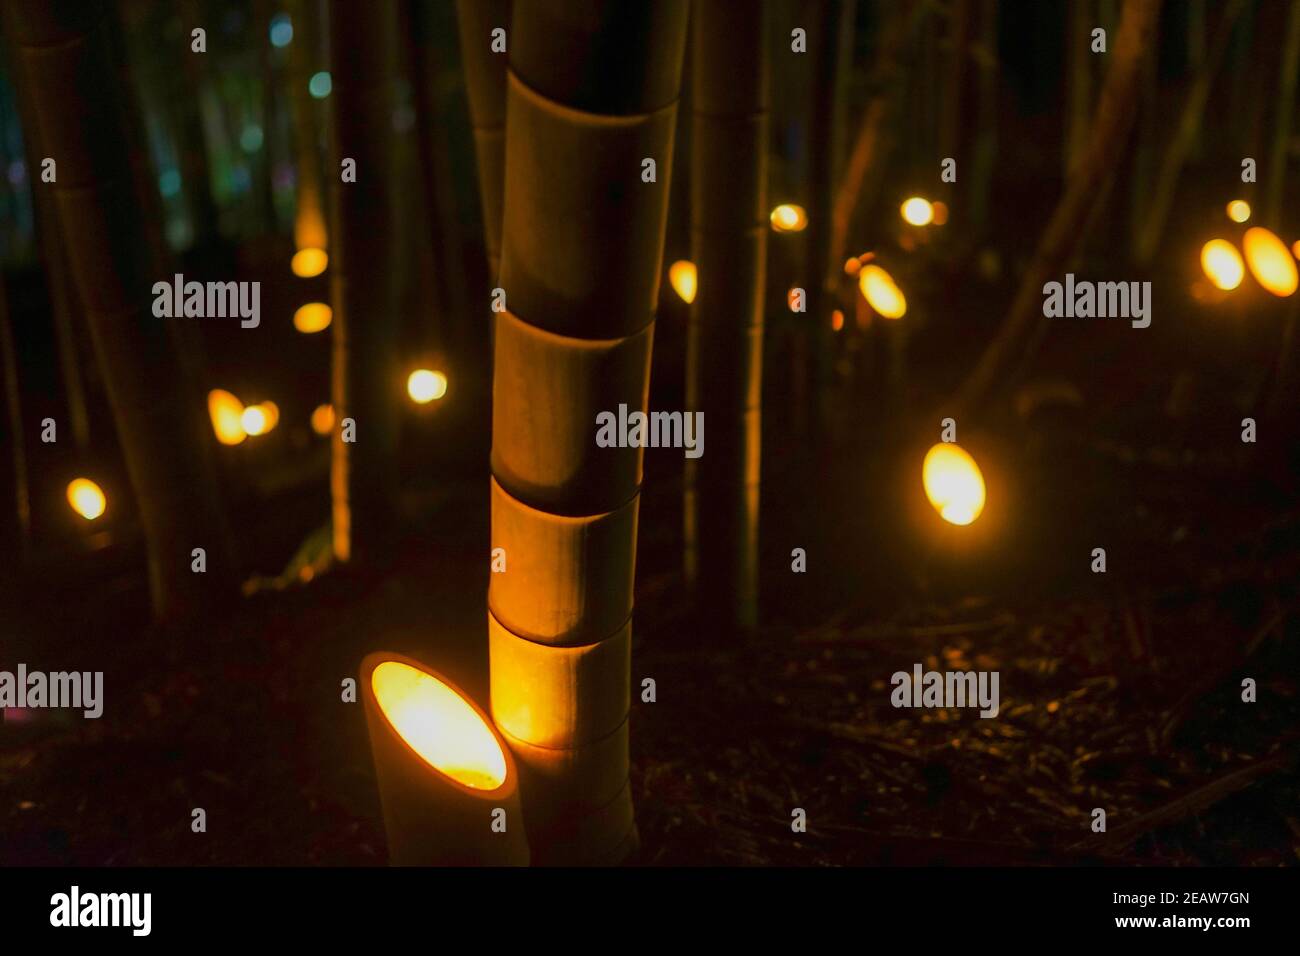 El bosque de bambú ilumina (Pequeño bosque del Castillo de escritorio de los ciudadanos) Foto de stock